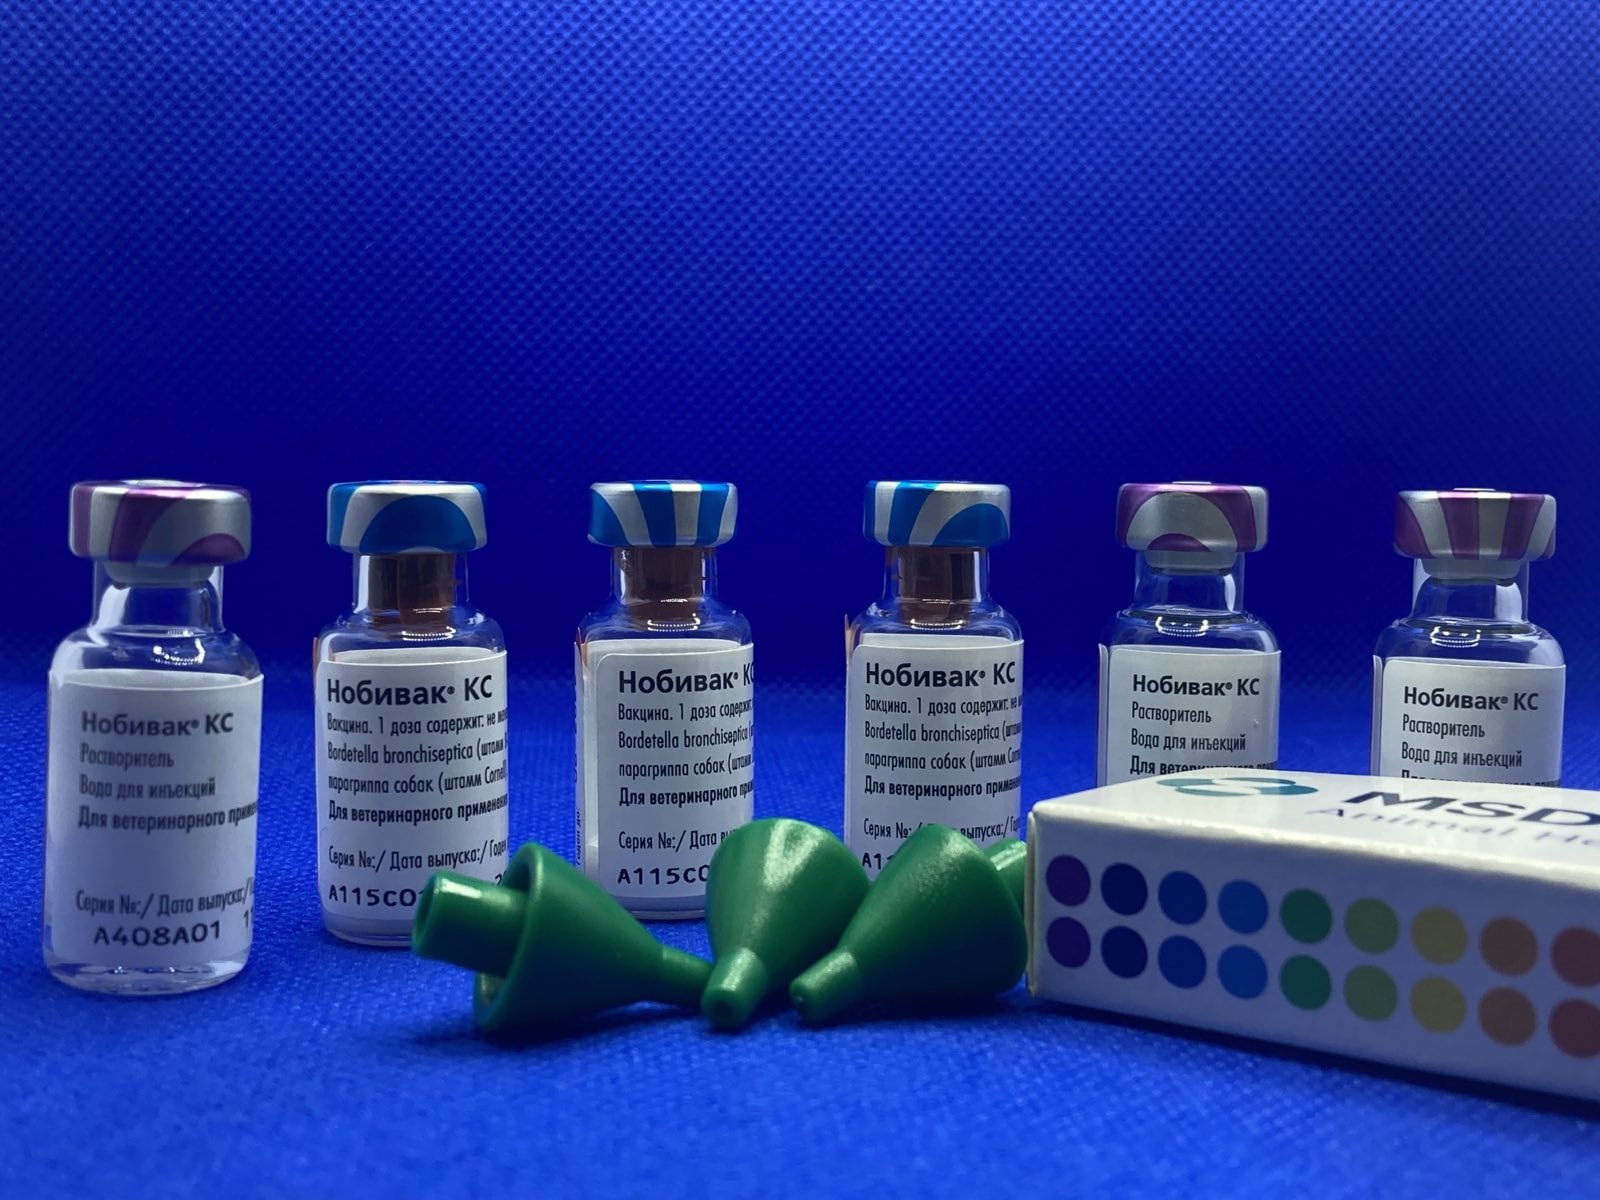 Вакцинация Нобивак KC против питомникового кашля в Родентовет